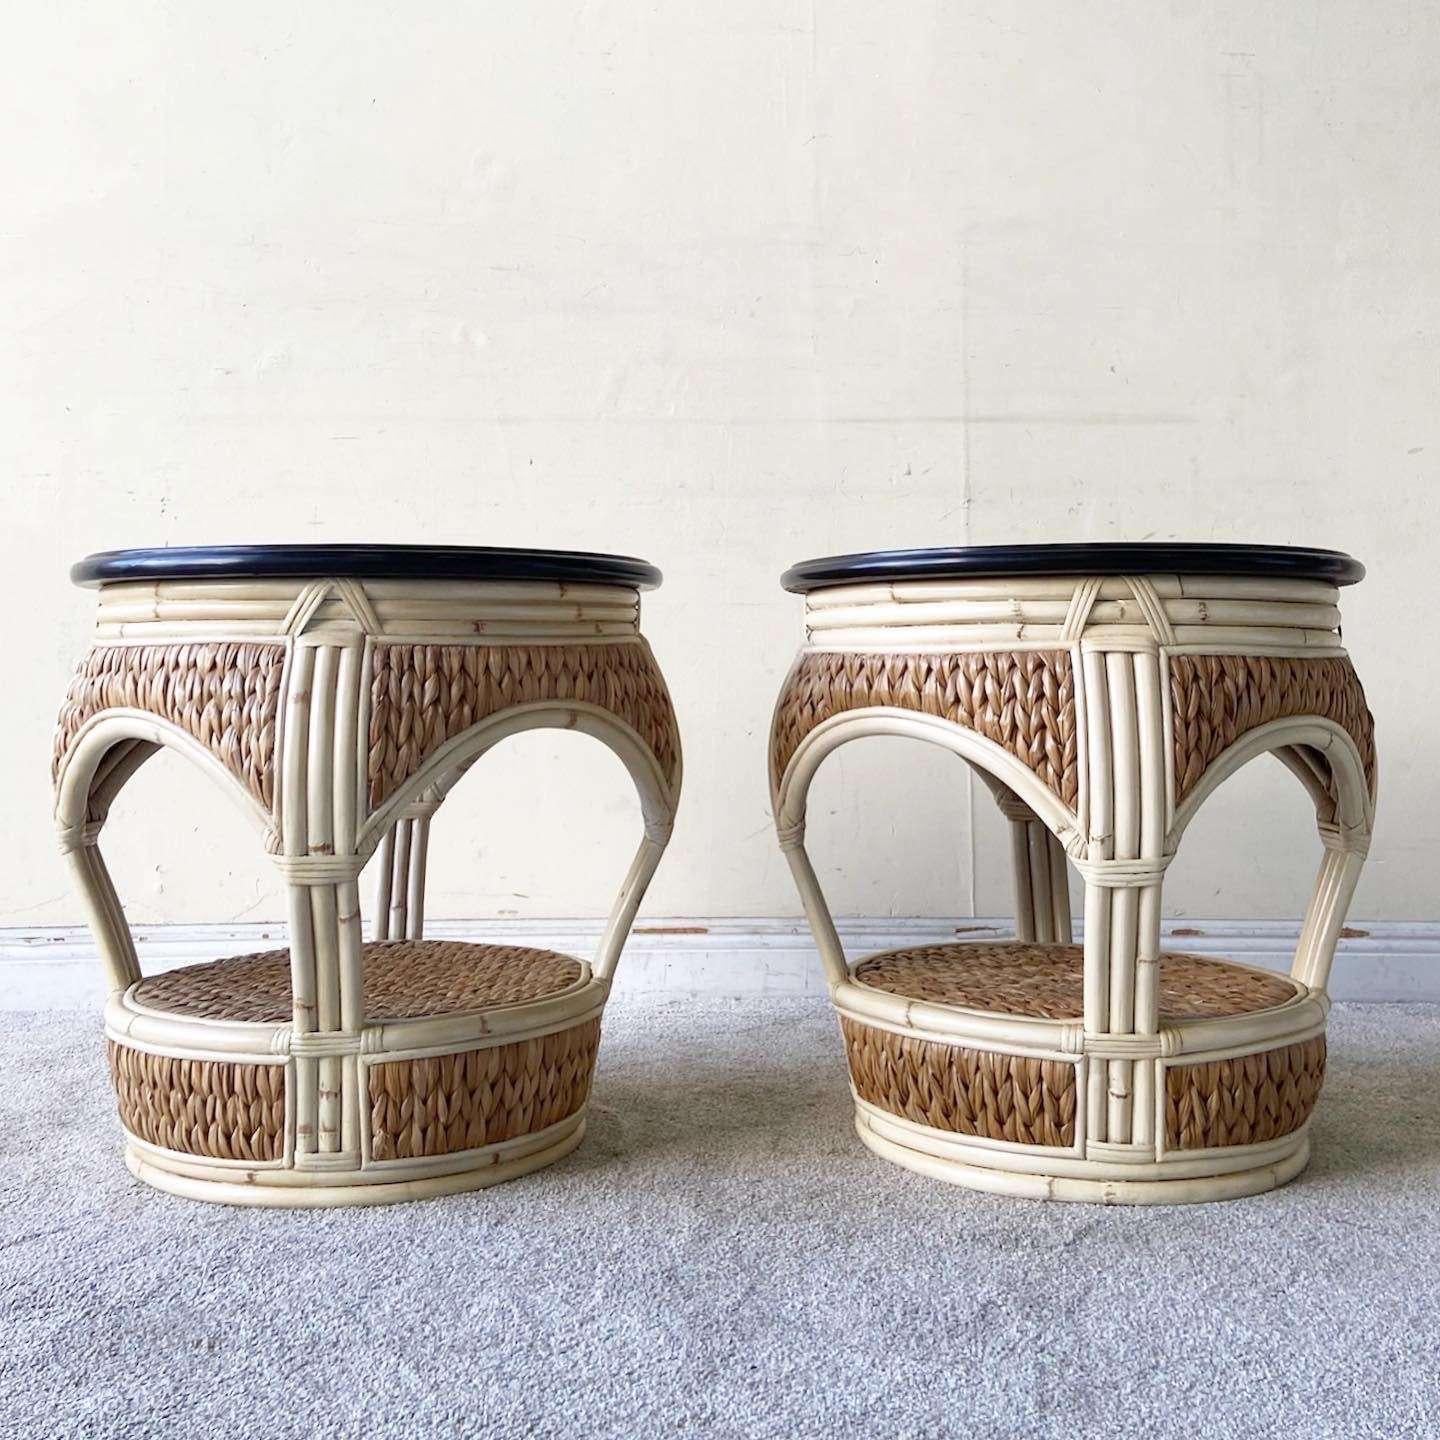 Außergewöhnliches Paar runder Beistelltische im Boho-Chic-Stil. Sie bestehen aus einer Holzplatte mit einem cremefarbenen Bambusrahmen und einer Seegrasverkleidung.